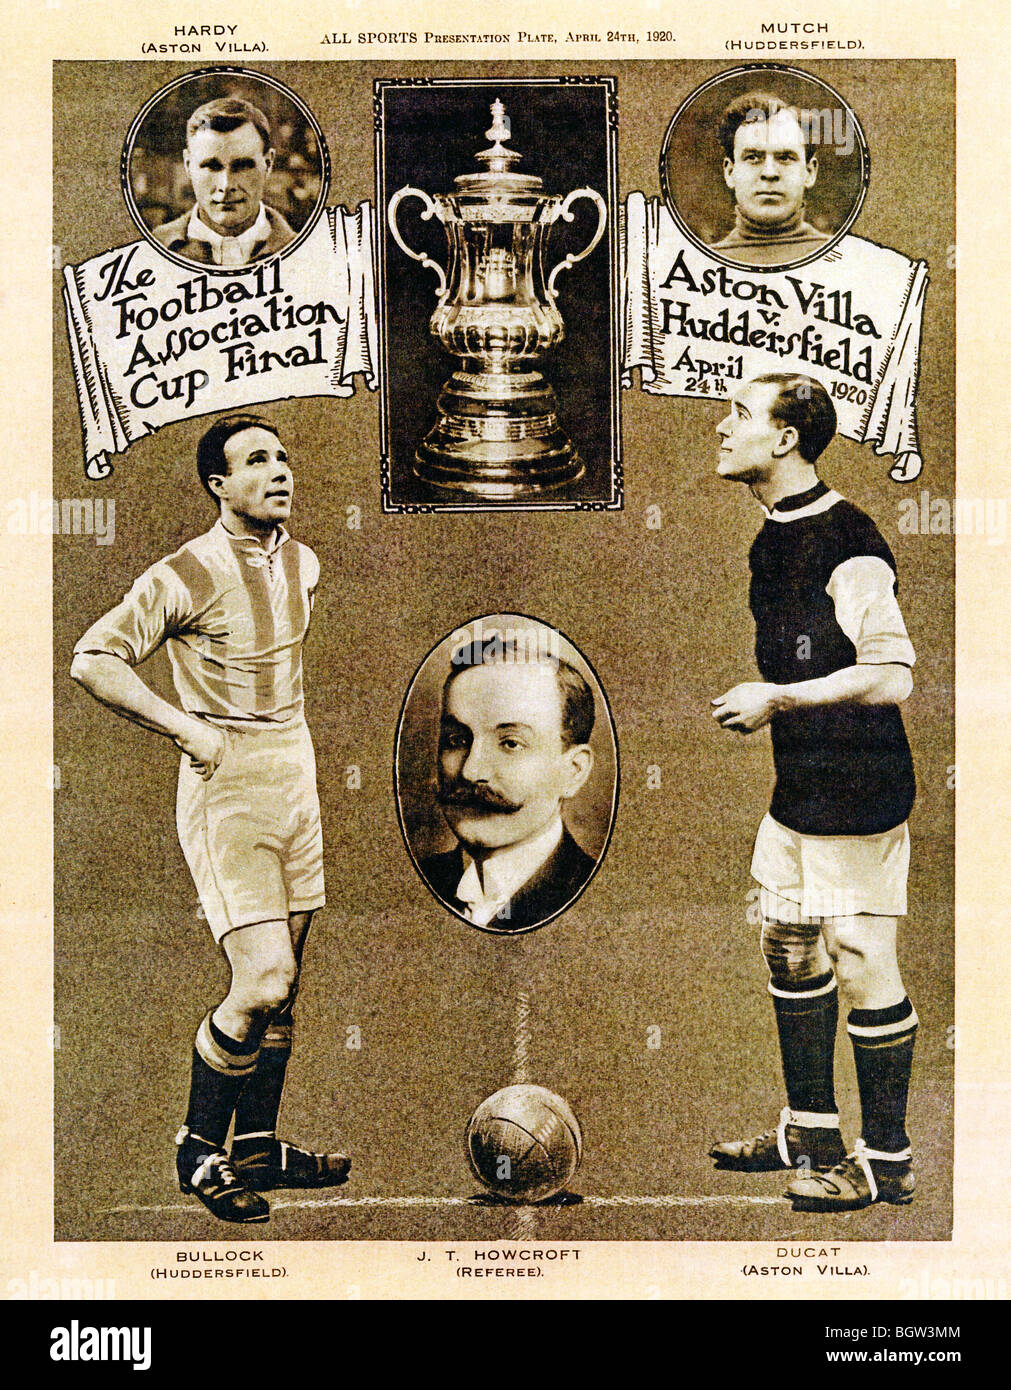 Finale de la FA Cup, 1920, présentation photo de l'équipe dans la première finale de l'après-Grande Guerre, Aston Villa a battu Huddersfield Town Banque D'Images